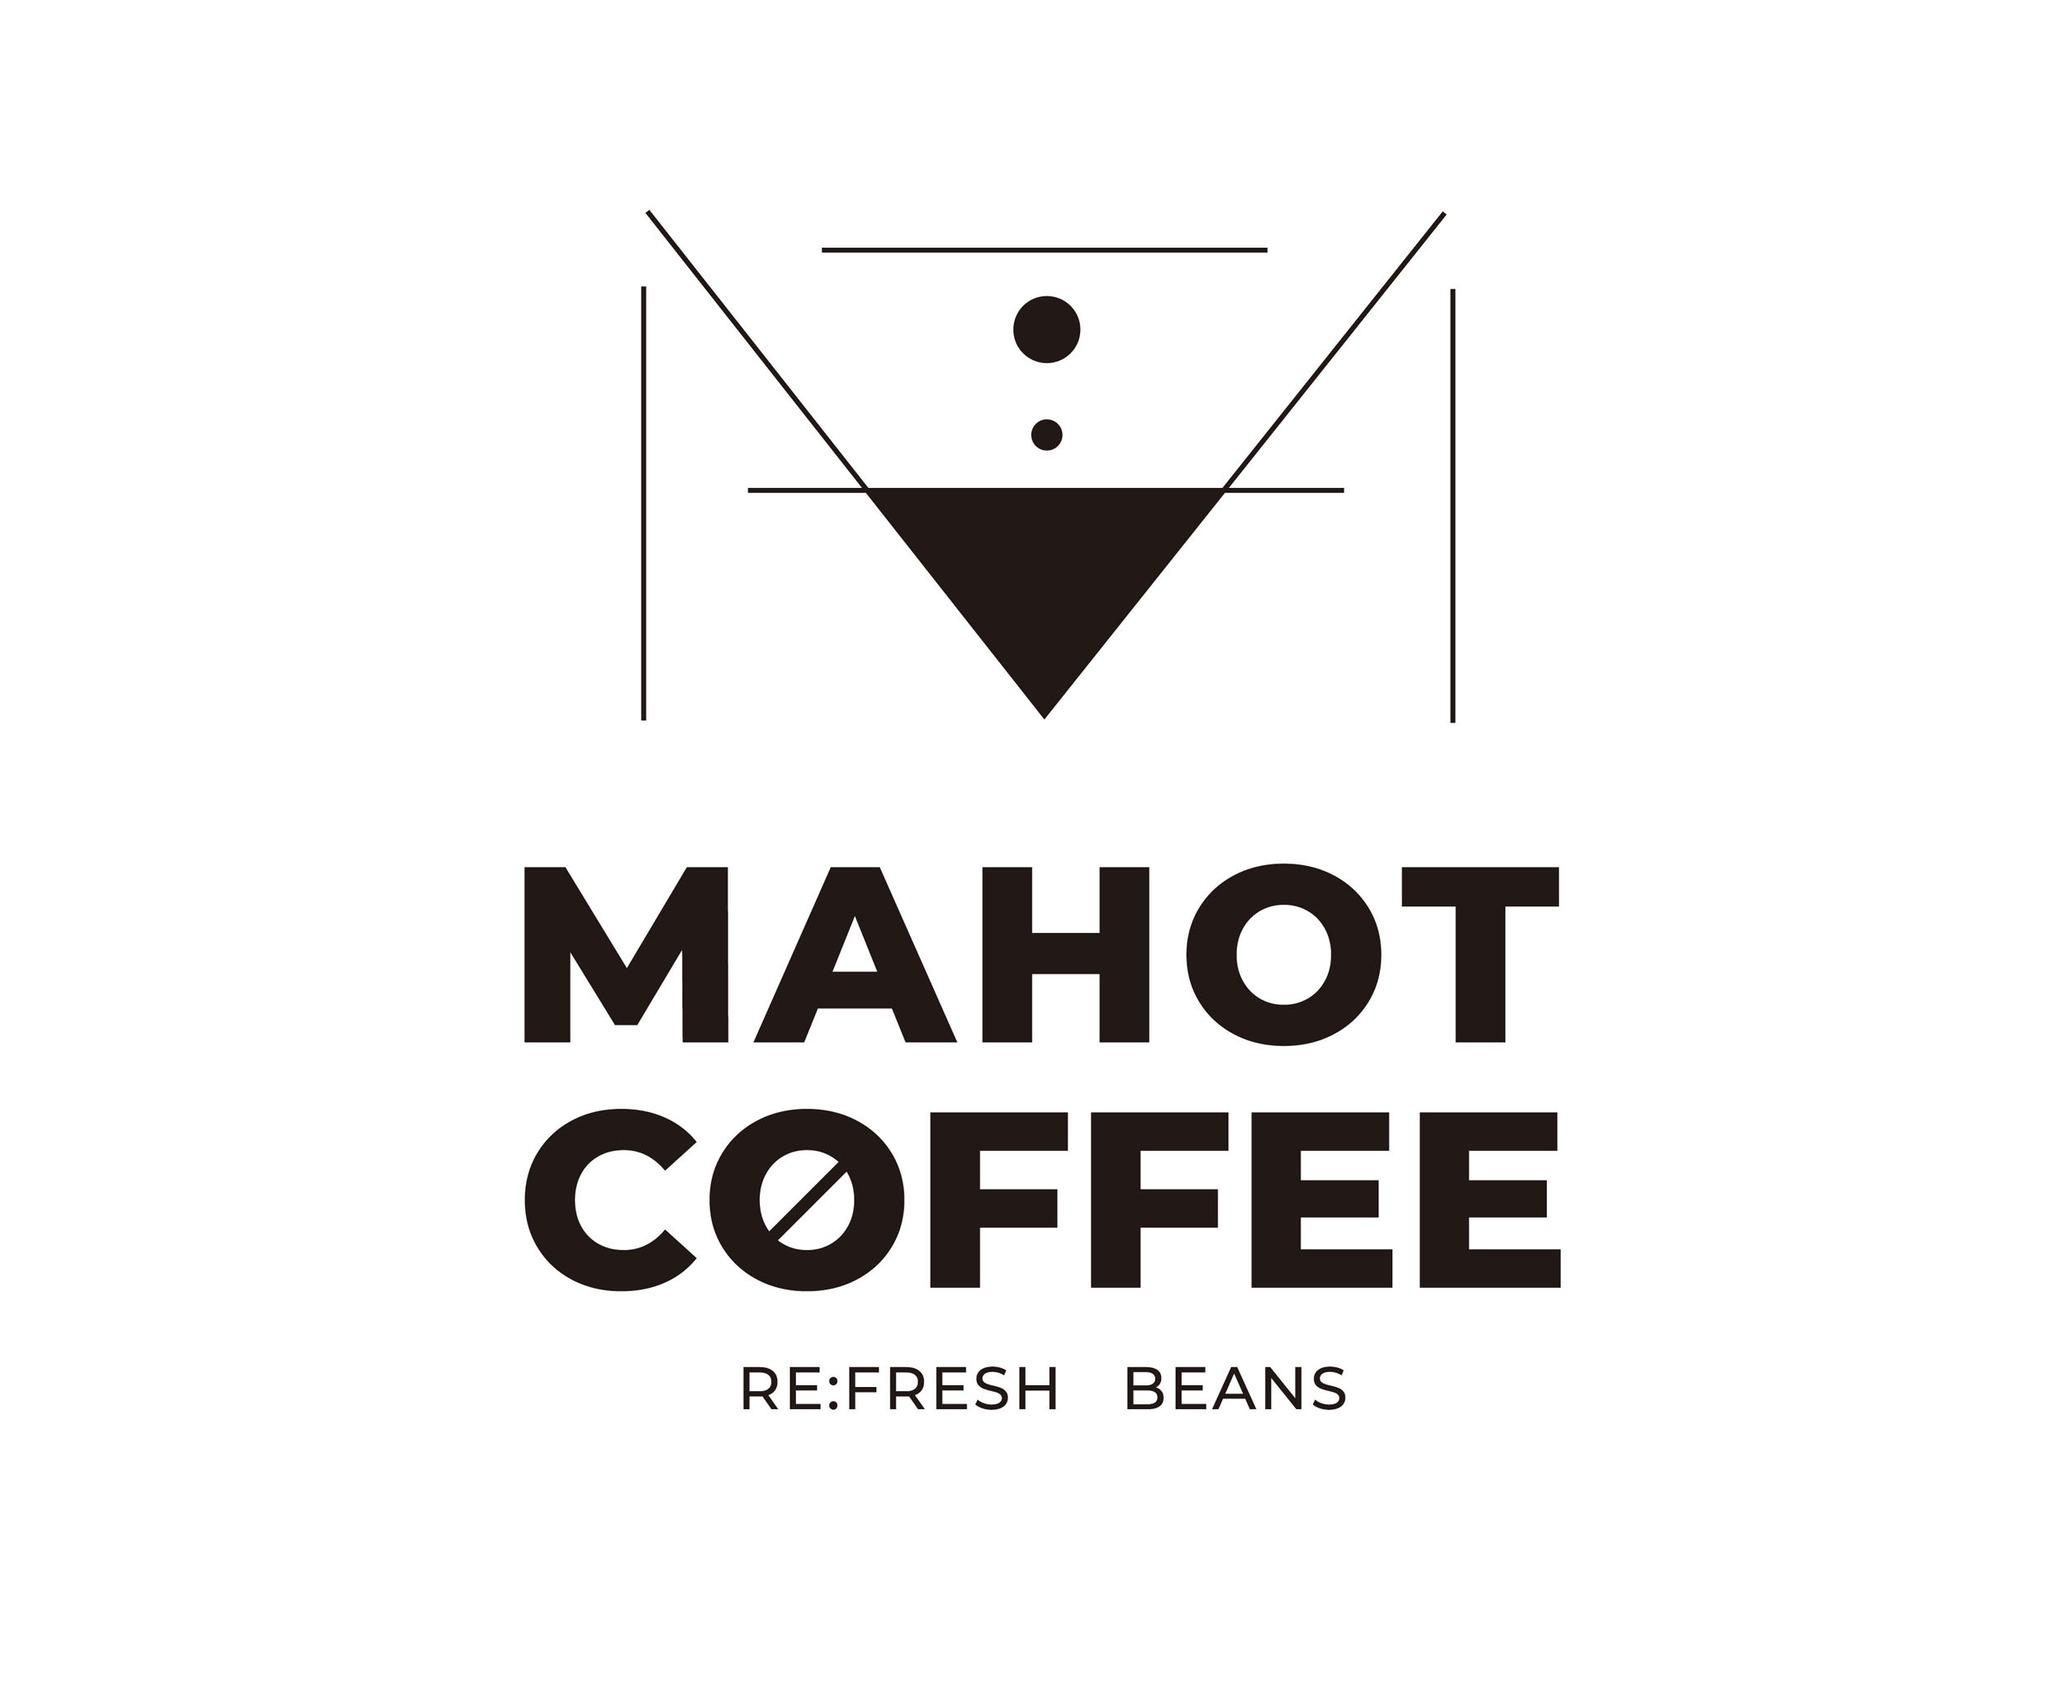 MAHOT COFFEE